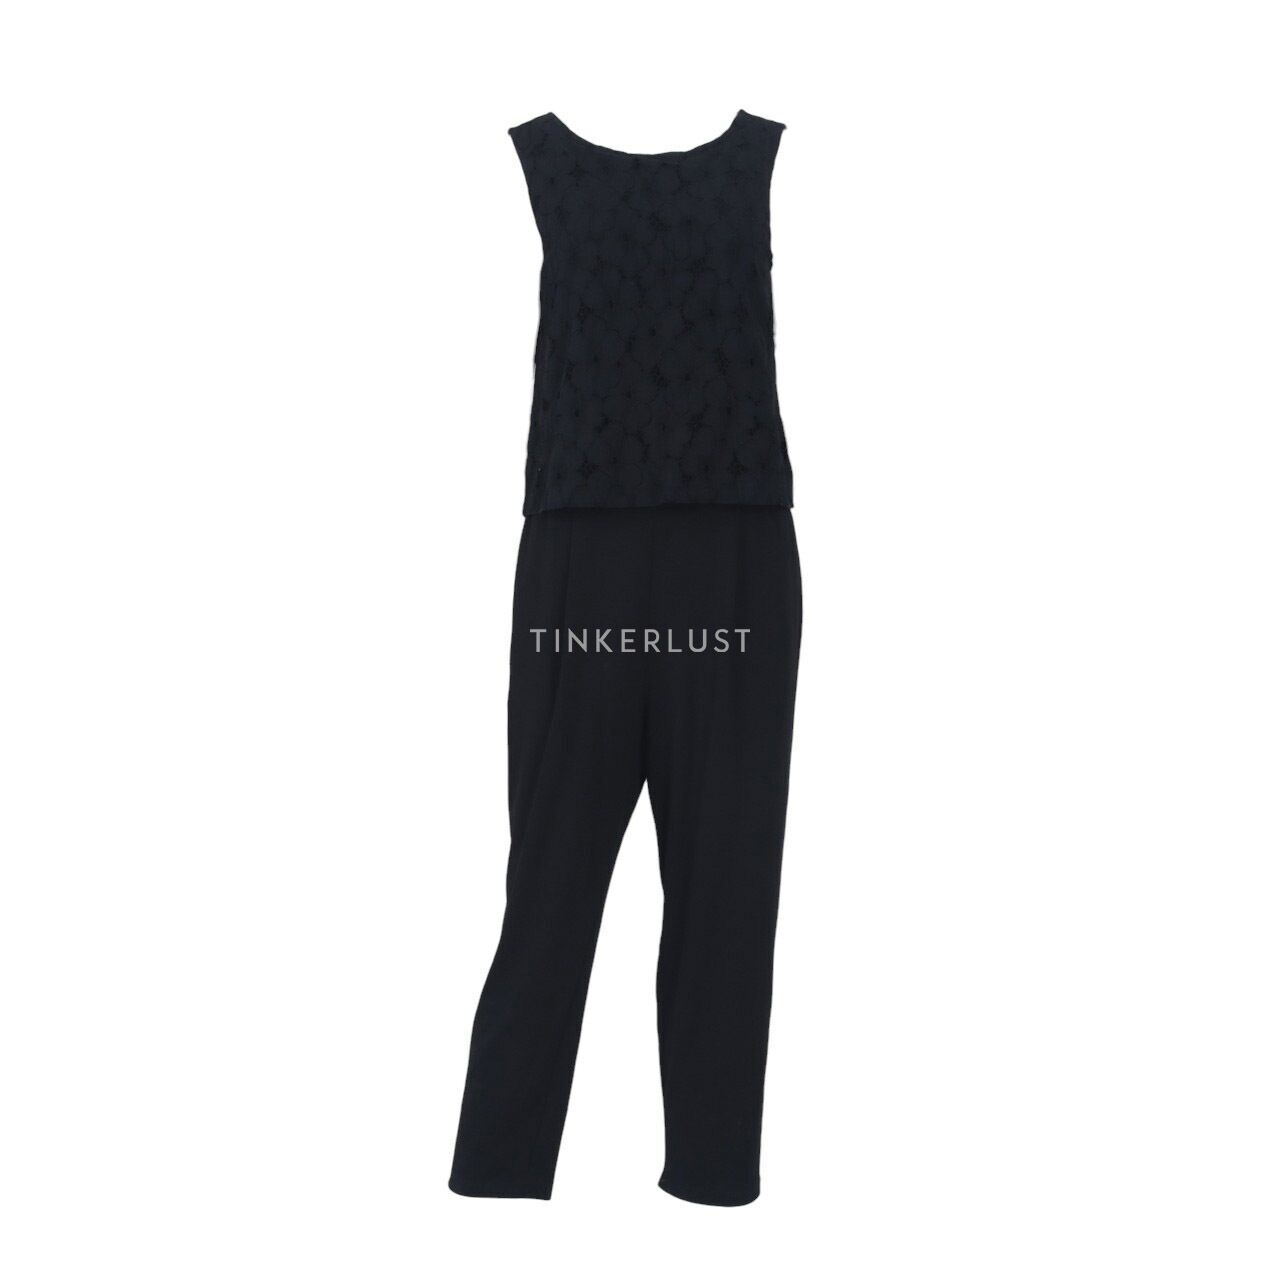 UNIQLO Black Lace Jumpsuit